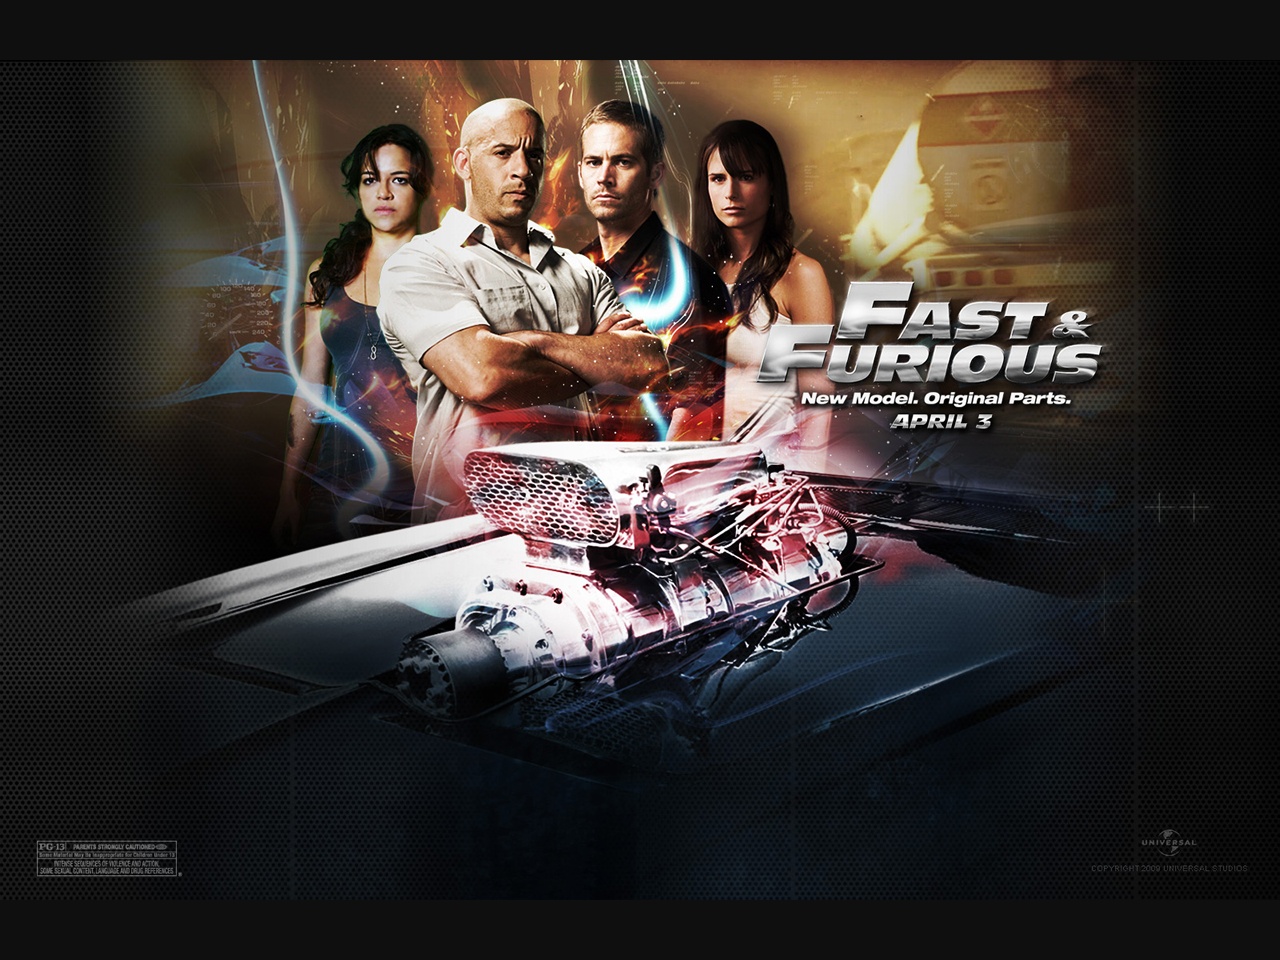 "Fast & Furious" desktop wallpaper (1280 x 960 pixels)